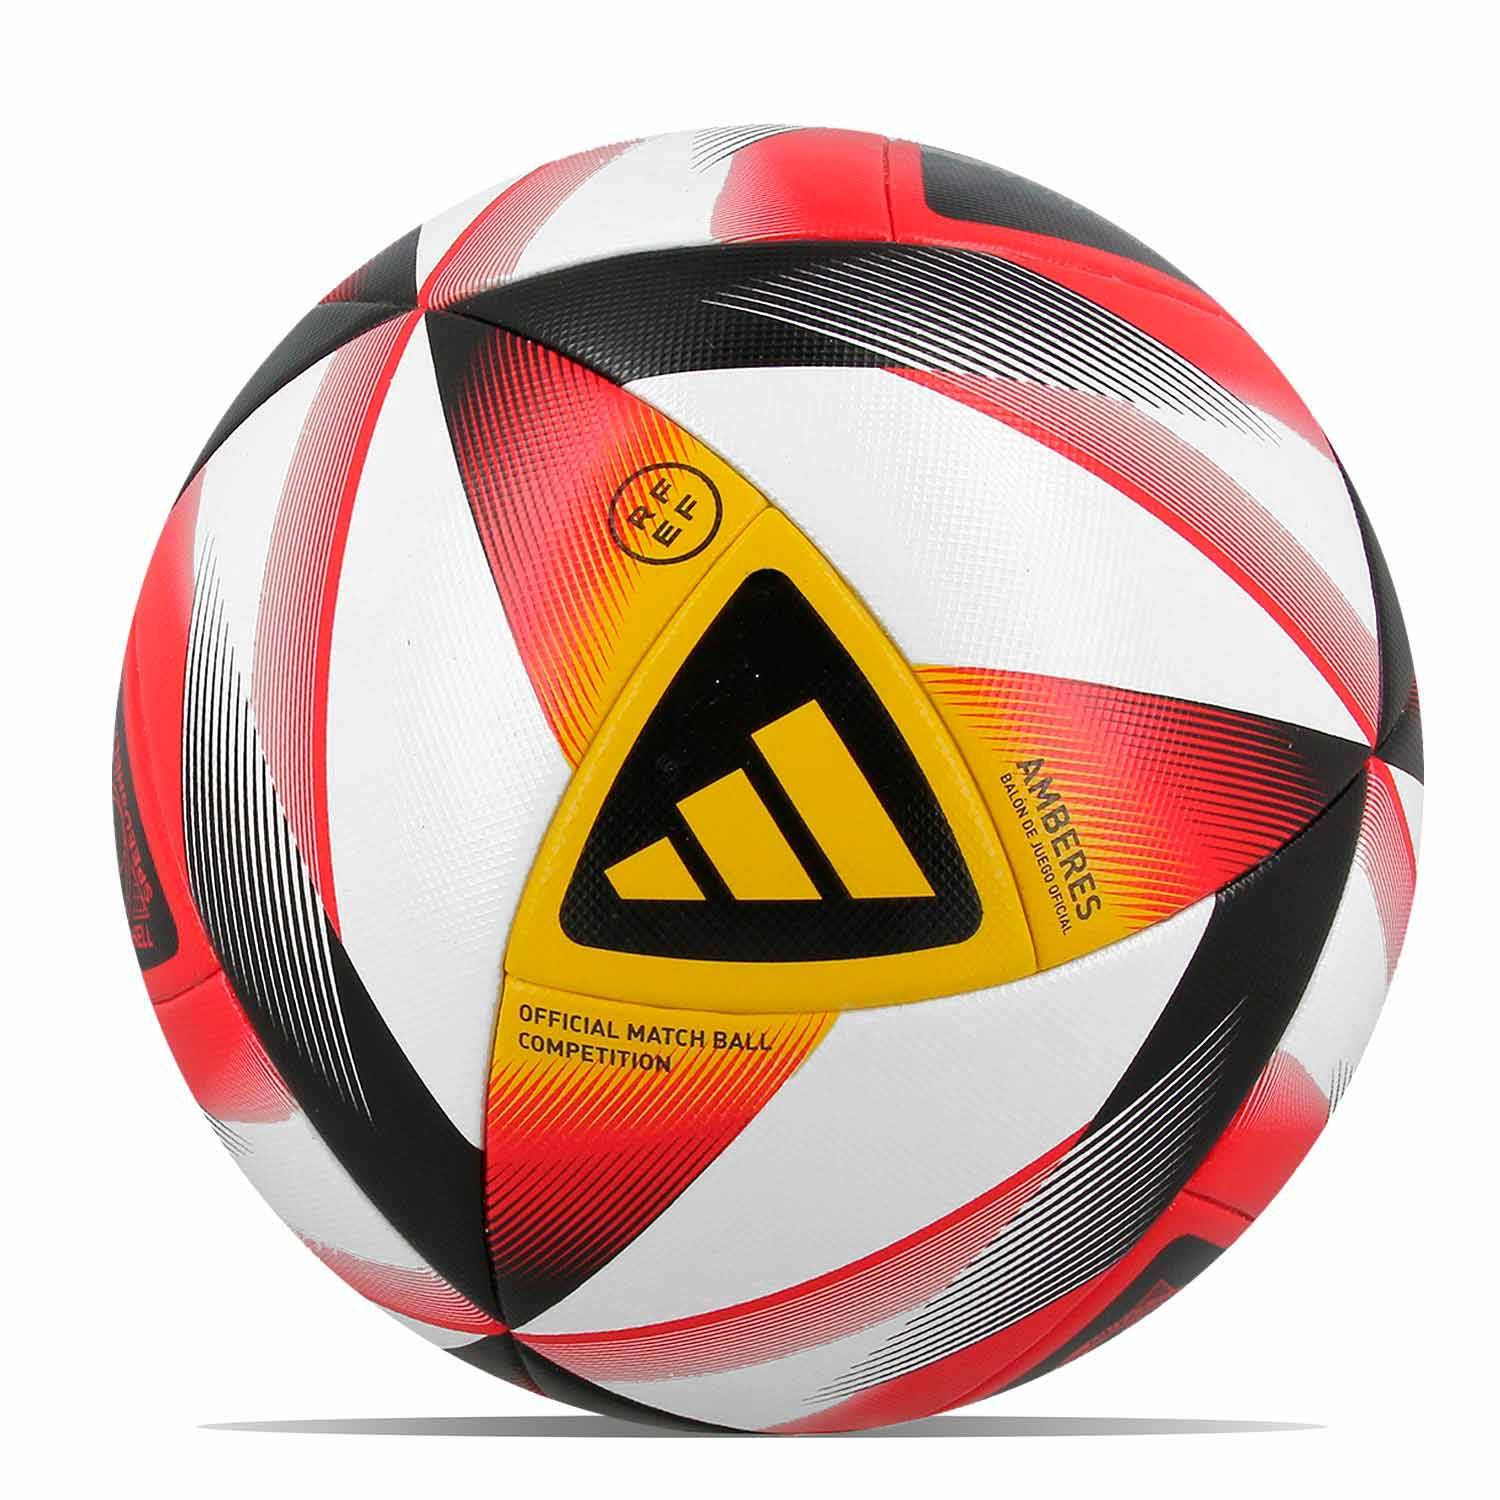 Balón Puma Orbita Serie A 23-24 FIFA Quality t5 blanco